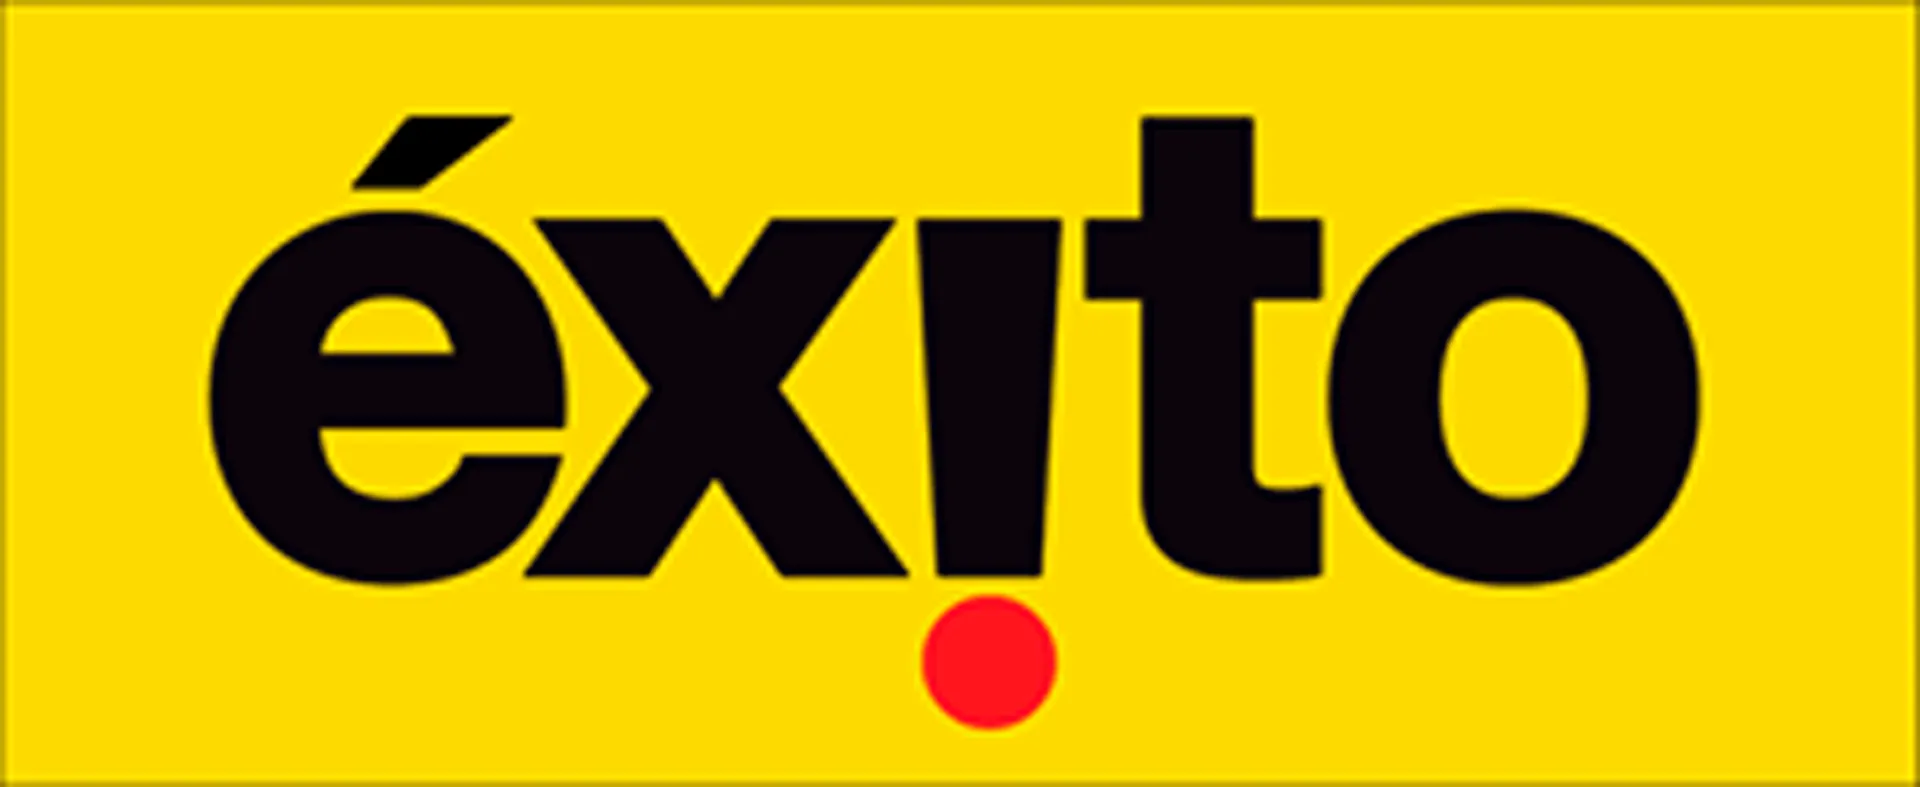 ÉXITO logo